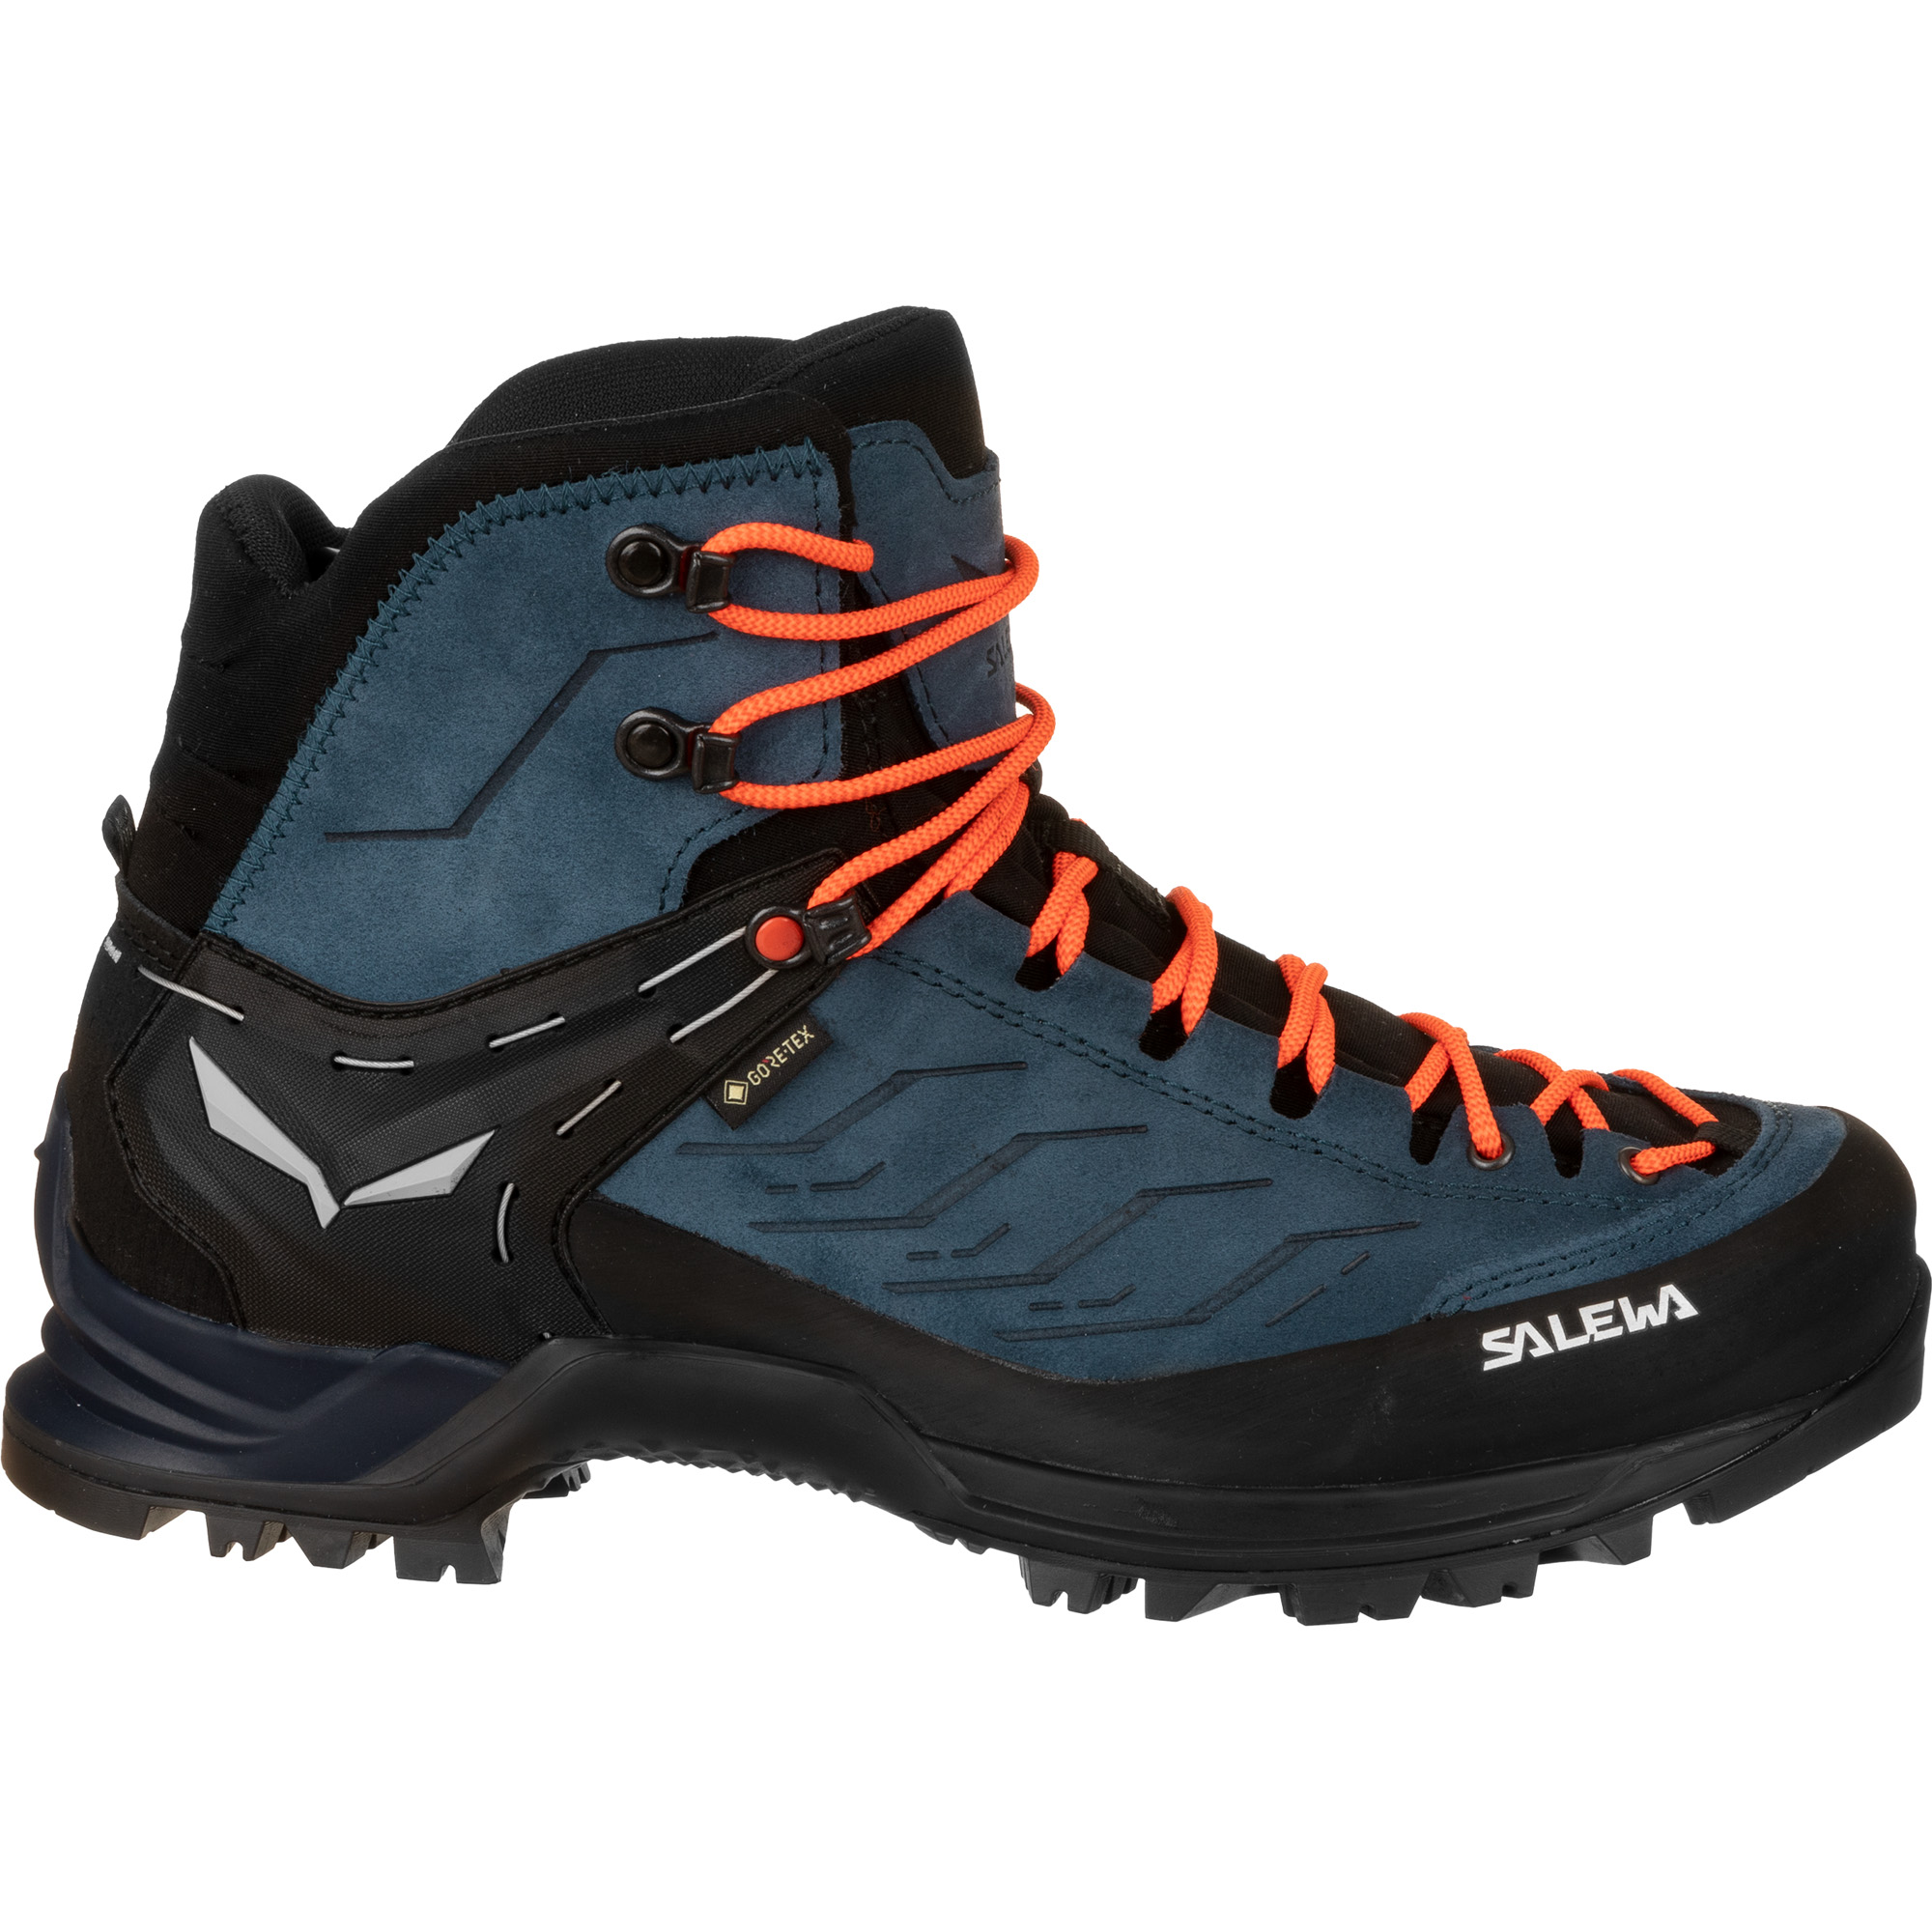 Salewa Mountain Trainer Mid GTX Hiking Boots